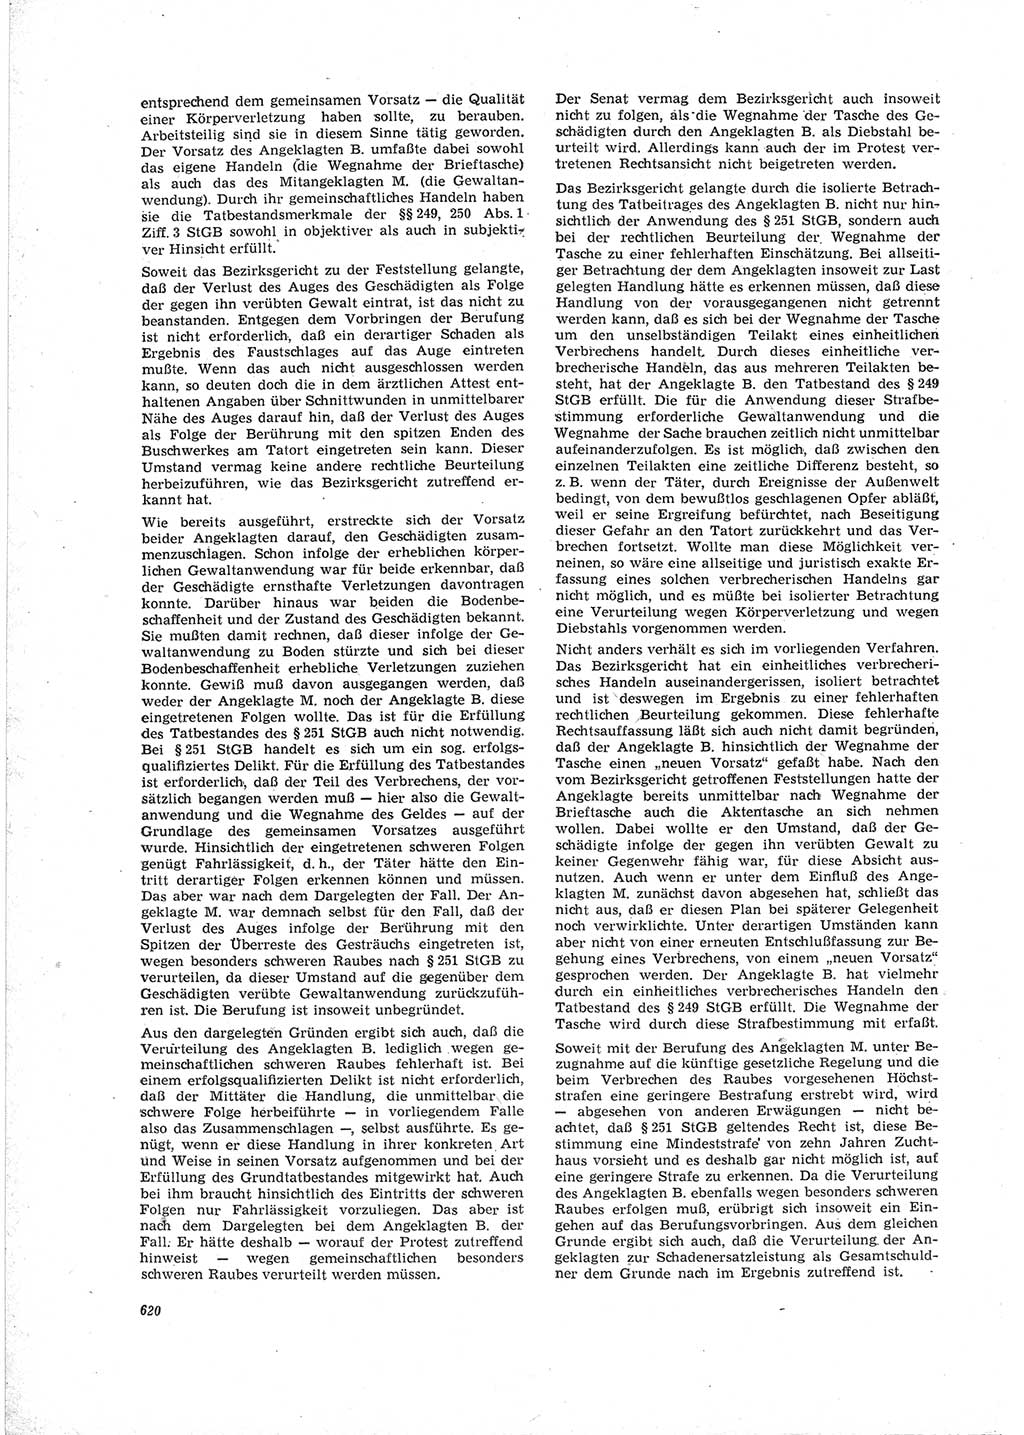 Neue Justiz (NJ), Zeitschrift für Recht und Rechtswissenschaft [Deutsche Demokratische Republik (DDR)], 19. Jahrgang 1965, Seite 620 (NJ DDR 1965, S. 620)